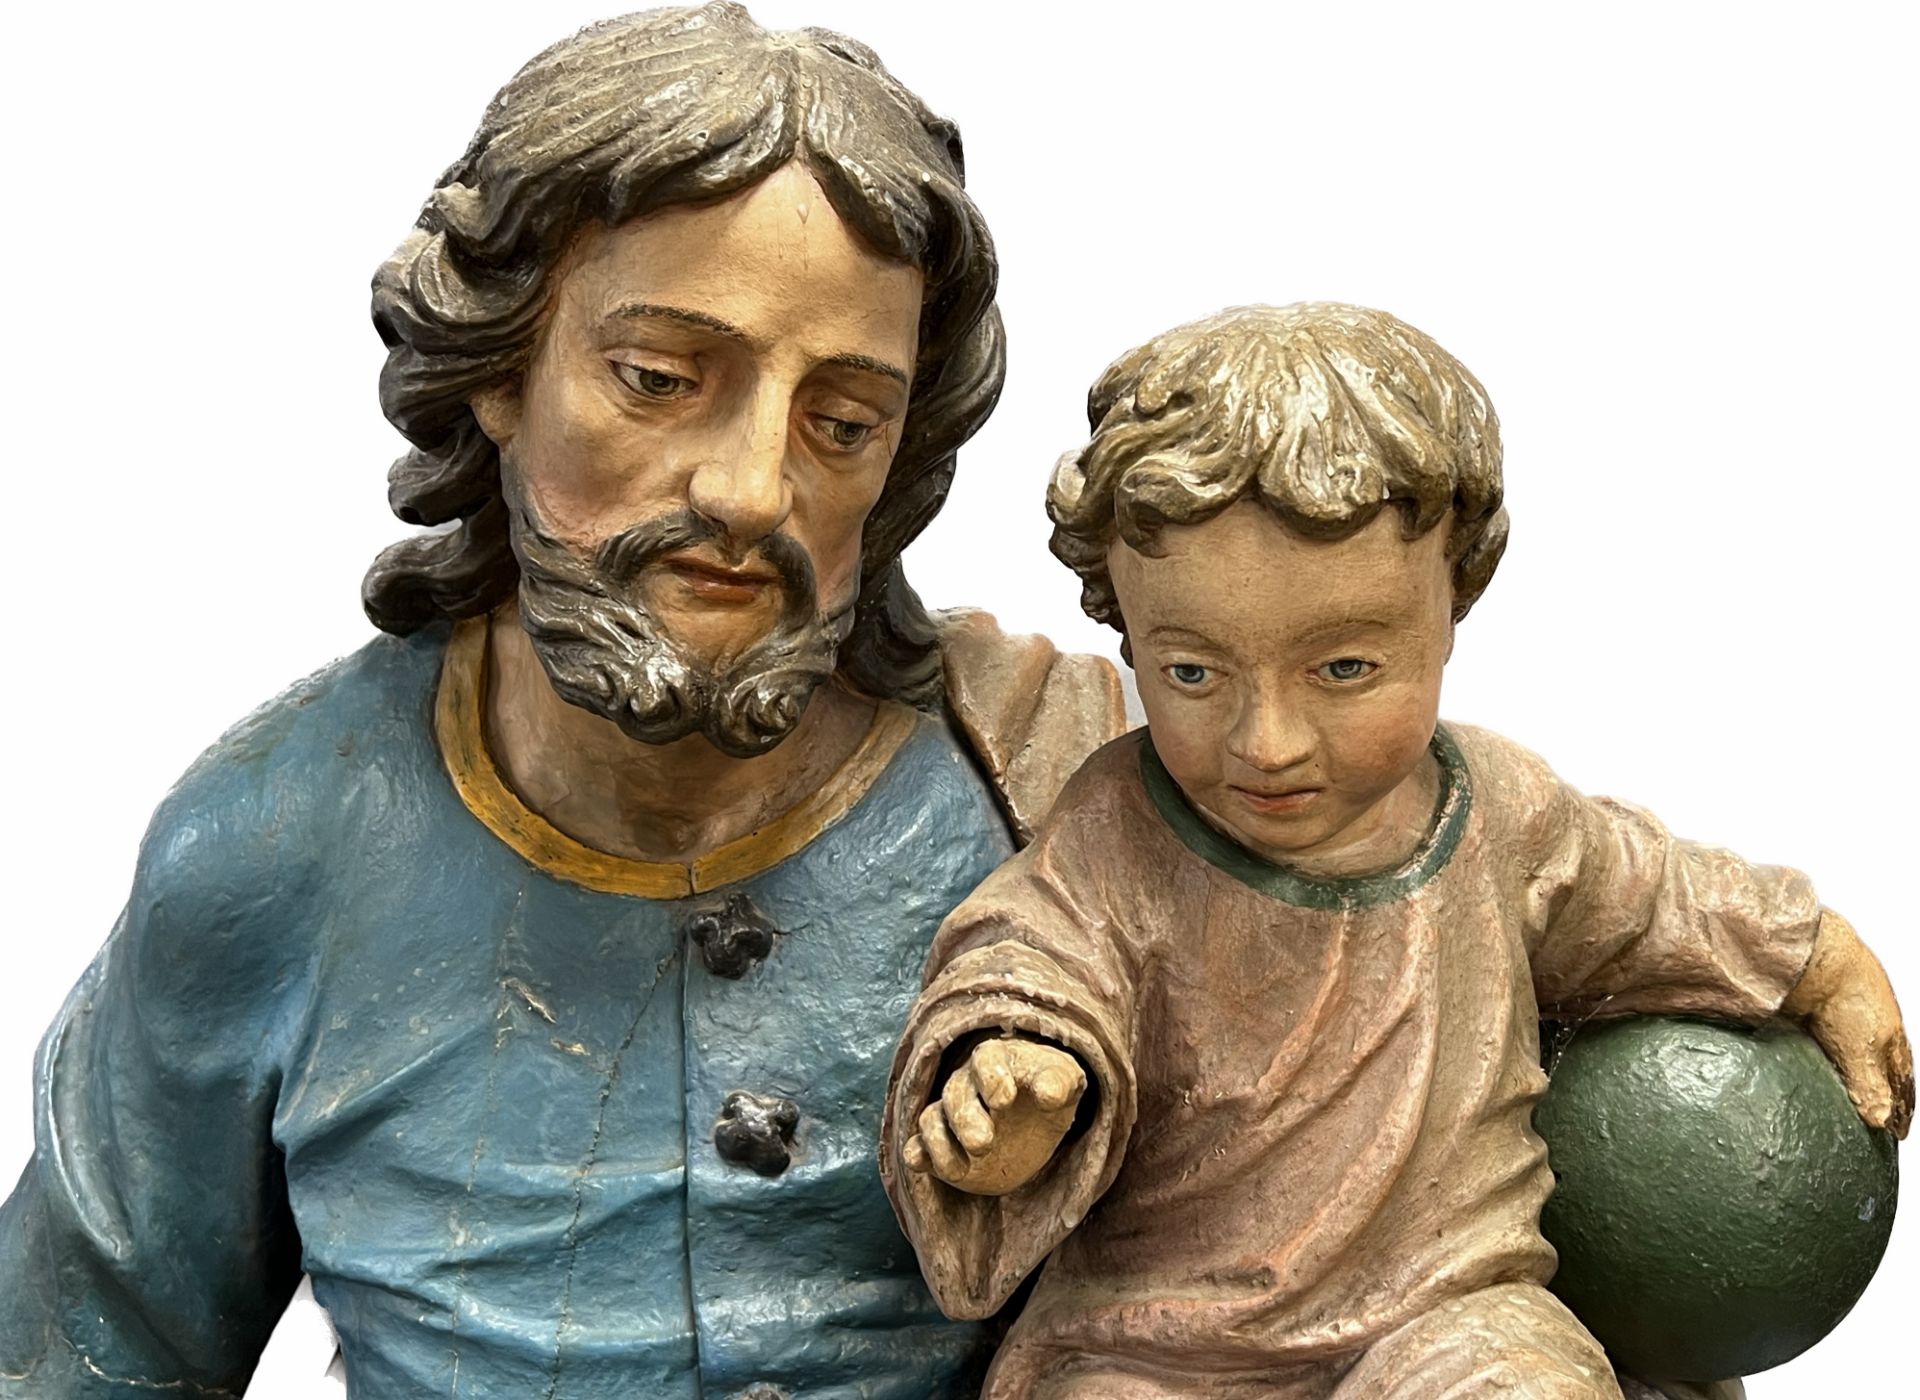 Lebensgroße Skulptur. Hl. Josef mit Christusknaben. Wohl 17. / 18. Jahrhundert. Süddeutschland. - Bild 2 aus 20